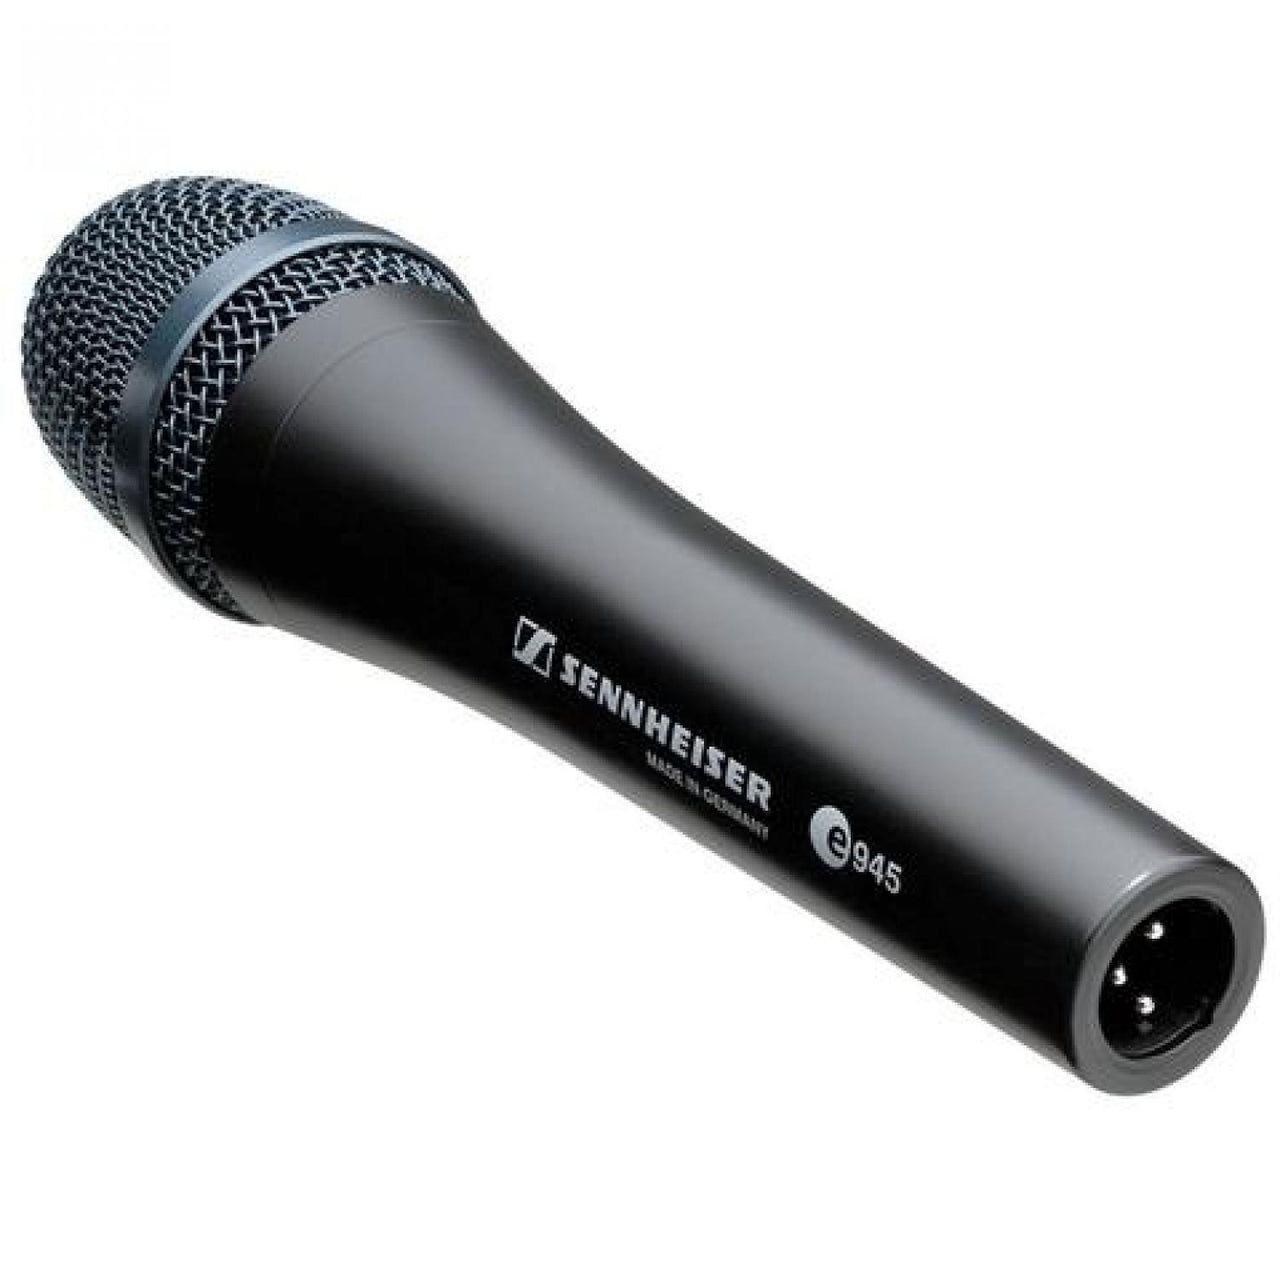 Microfono Sennheiser Supercardioide P/Voces, E945